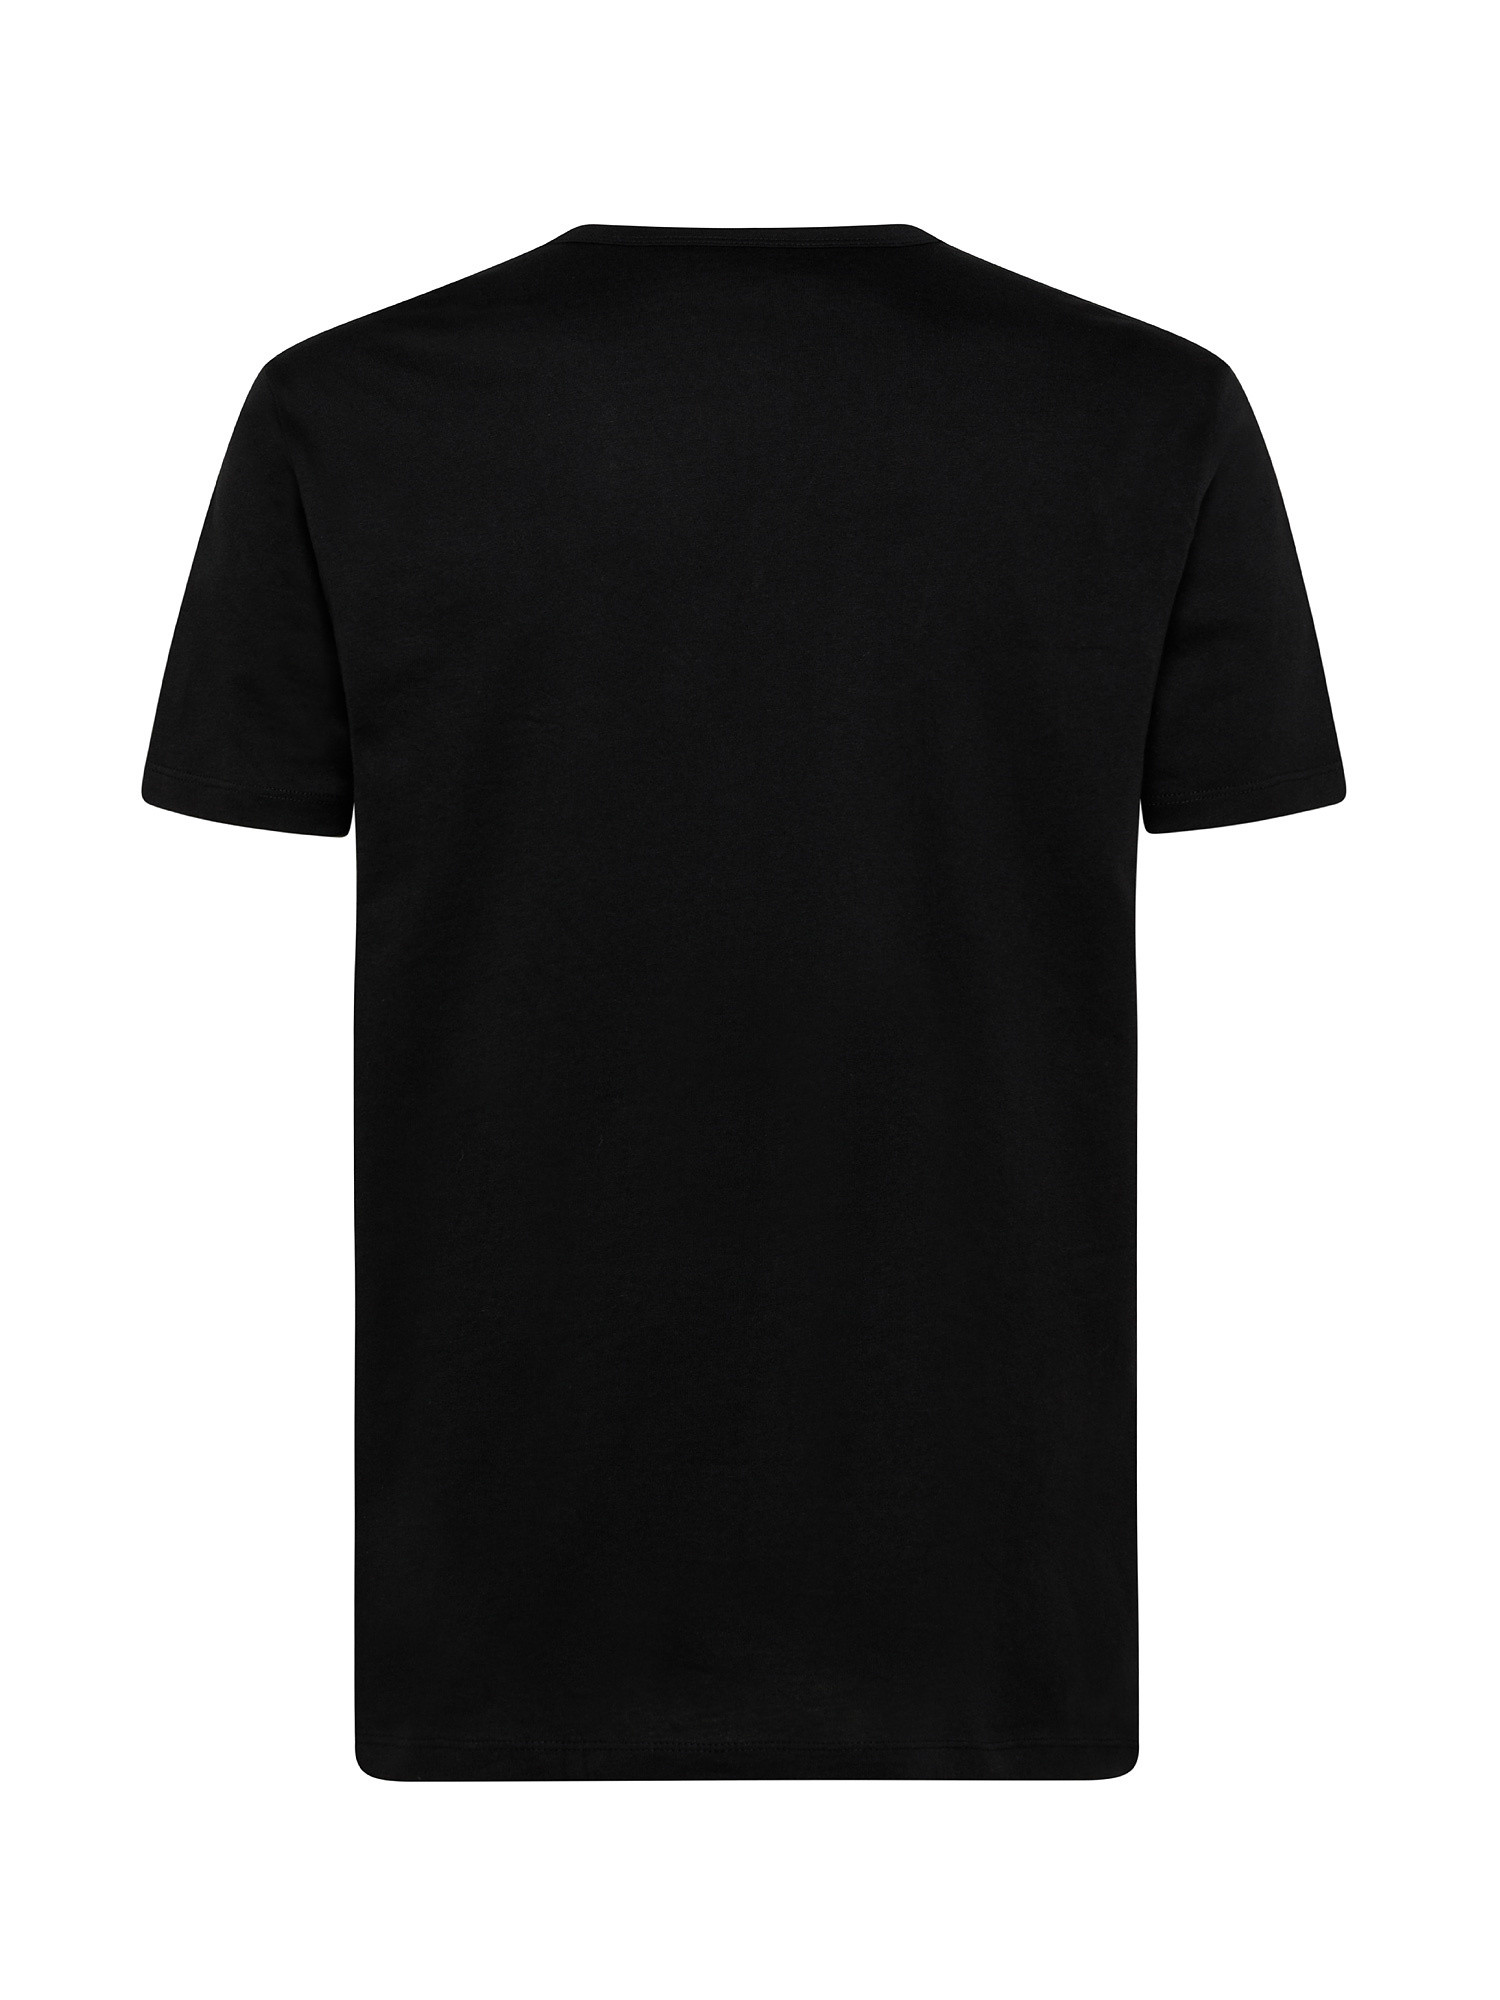 Set da 2 t-shirt, Nero, large image number 1